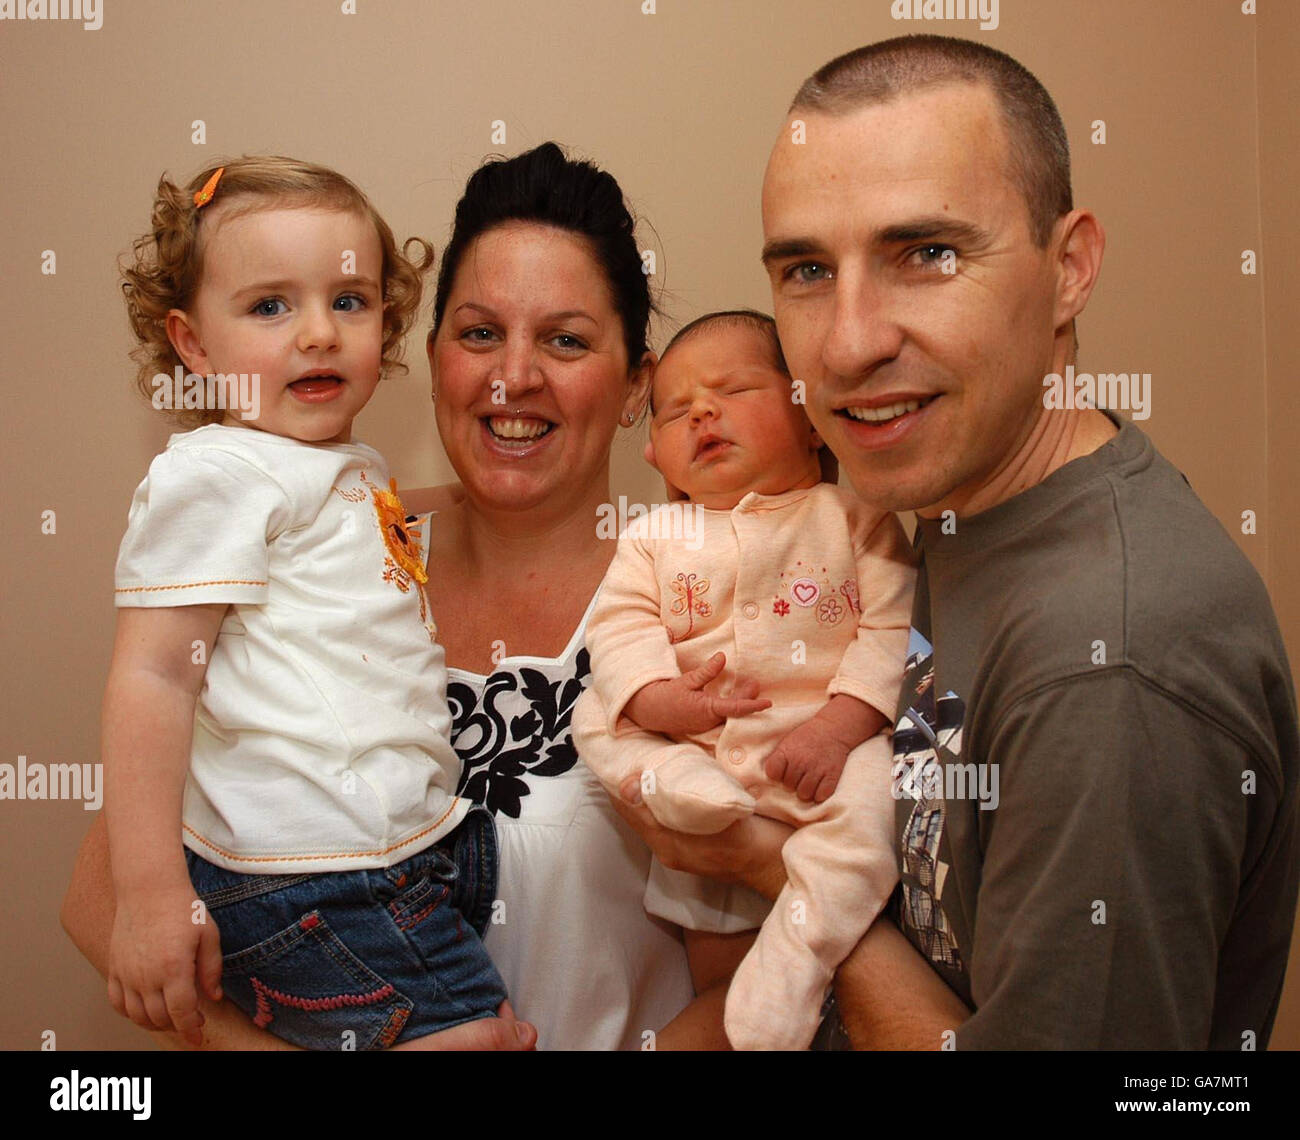 Mel und Peter Byrne, zusammen mit ihrer zweiten Tochter Maisy, und Lulu, die mit einem Gewicht von 8 kg geboren wurde, kamen am 8. Tag des 8. Monats um 8:08 Uhr nach acht Stunden Arbeit im Liverpool Women's Hospital an. Stockfoto